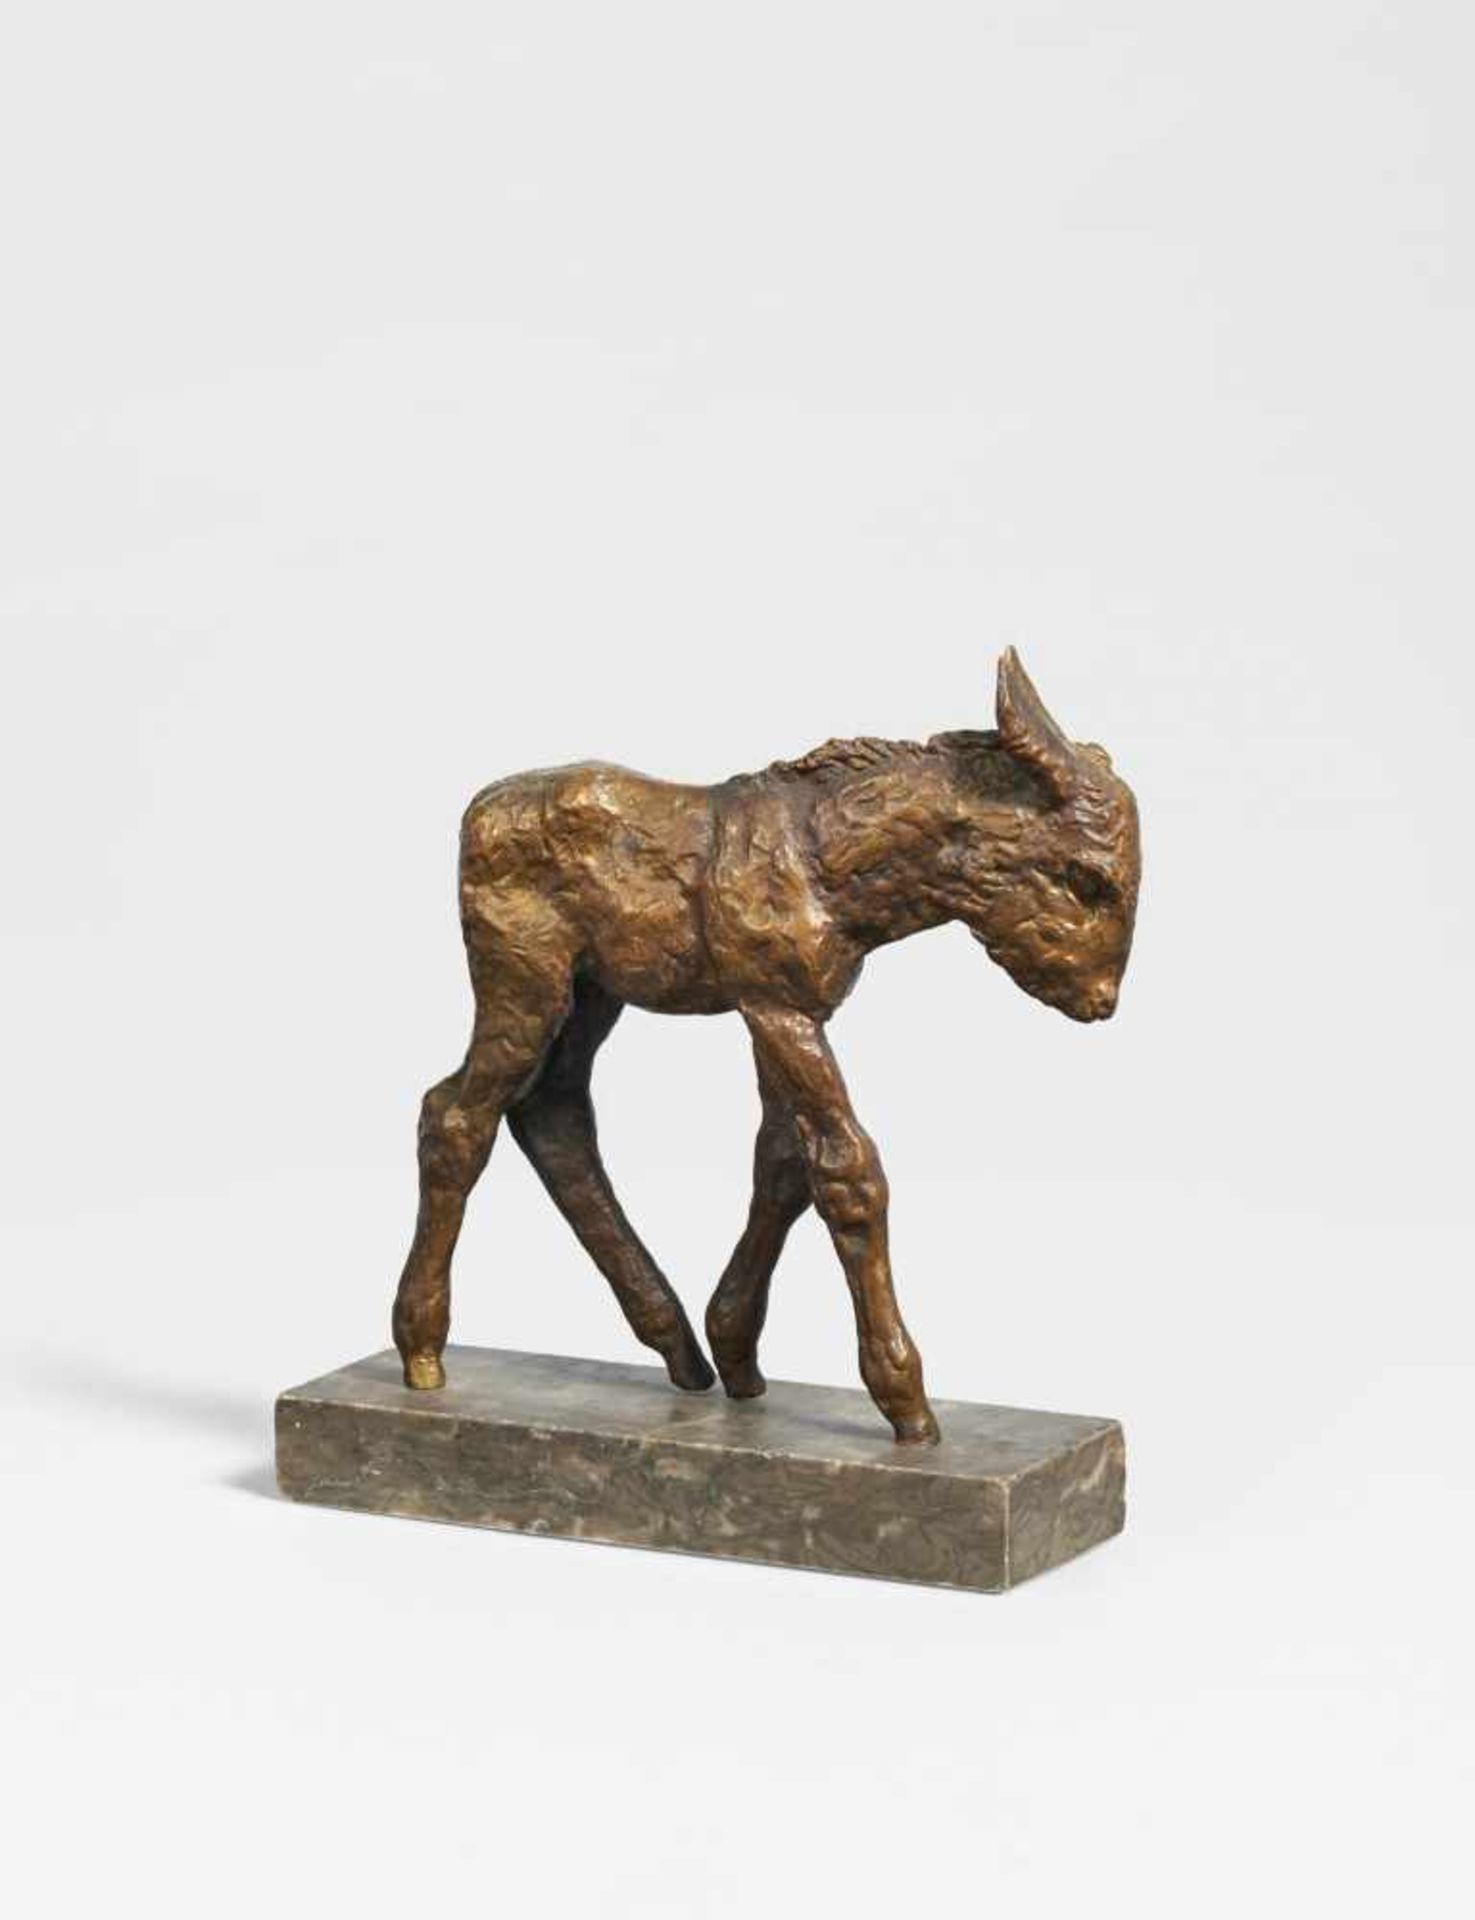 Sintenis, Renée1888 Glatz/Silesia - 1965 BerlinJunger Esel. 1923 (design). Bronze, brown